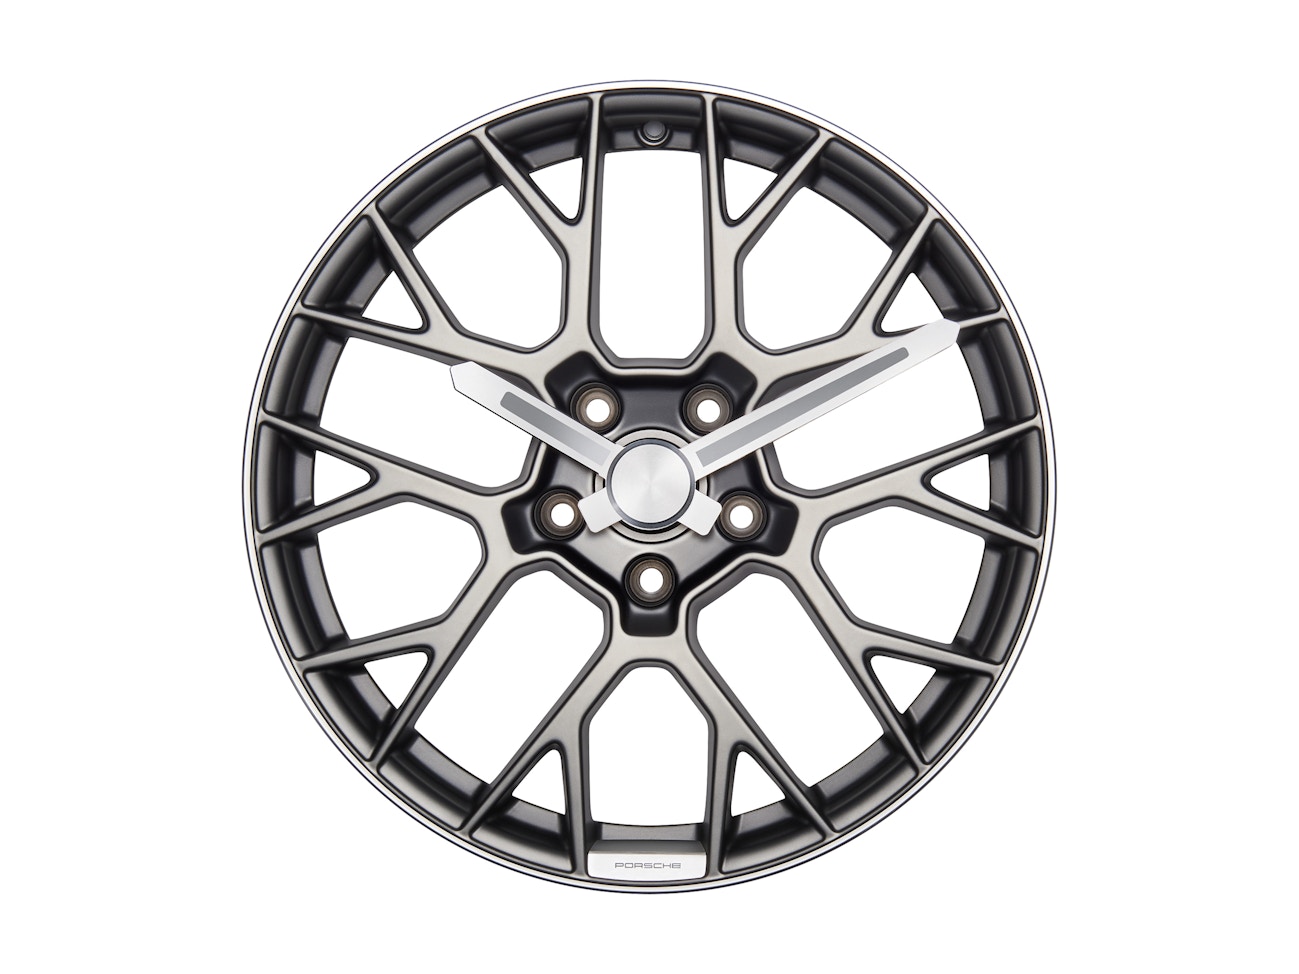 Wheel rim wall clock – Porsche Originals